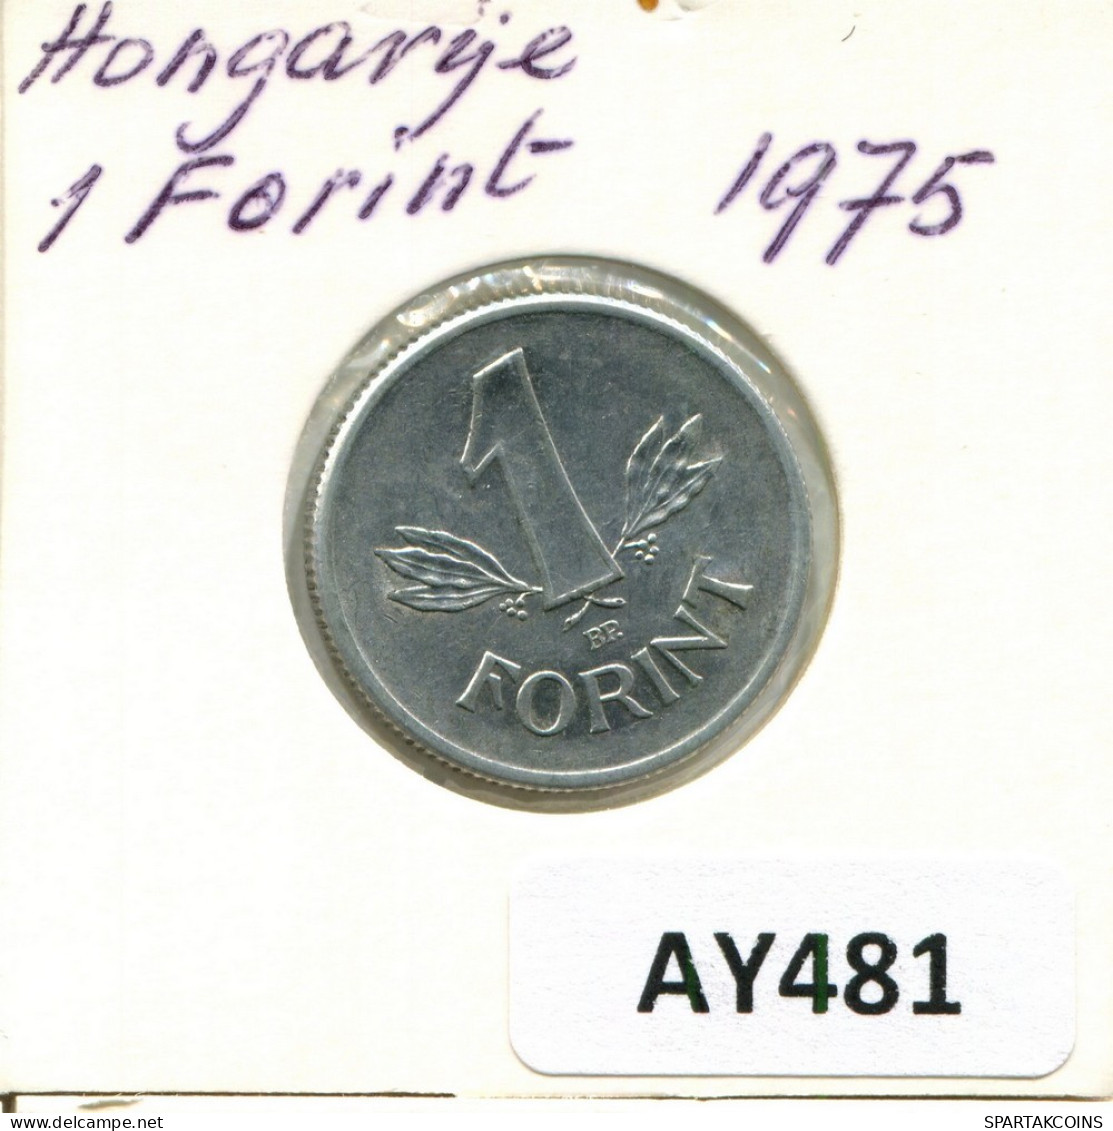 1 FORINT 1975 SIEBENBÜRGEN HUNGARY Münze #AY481.D.A - Ungheria